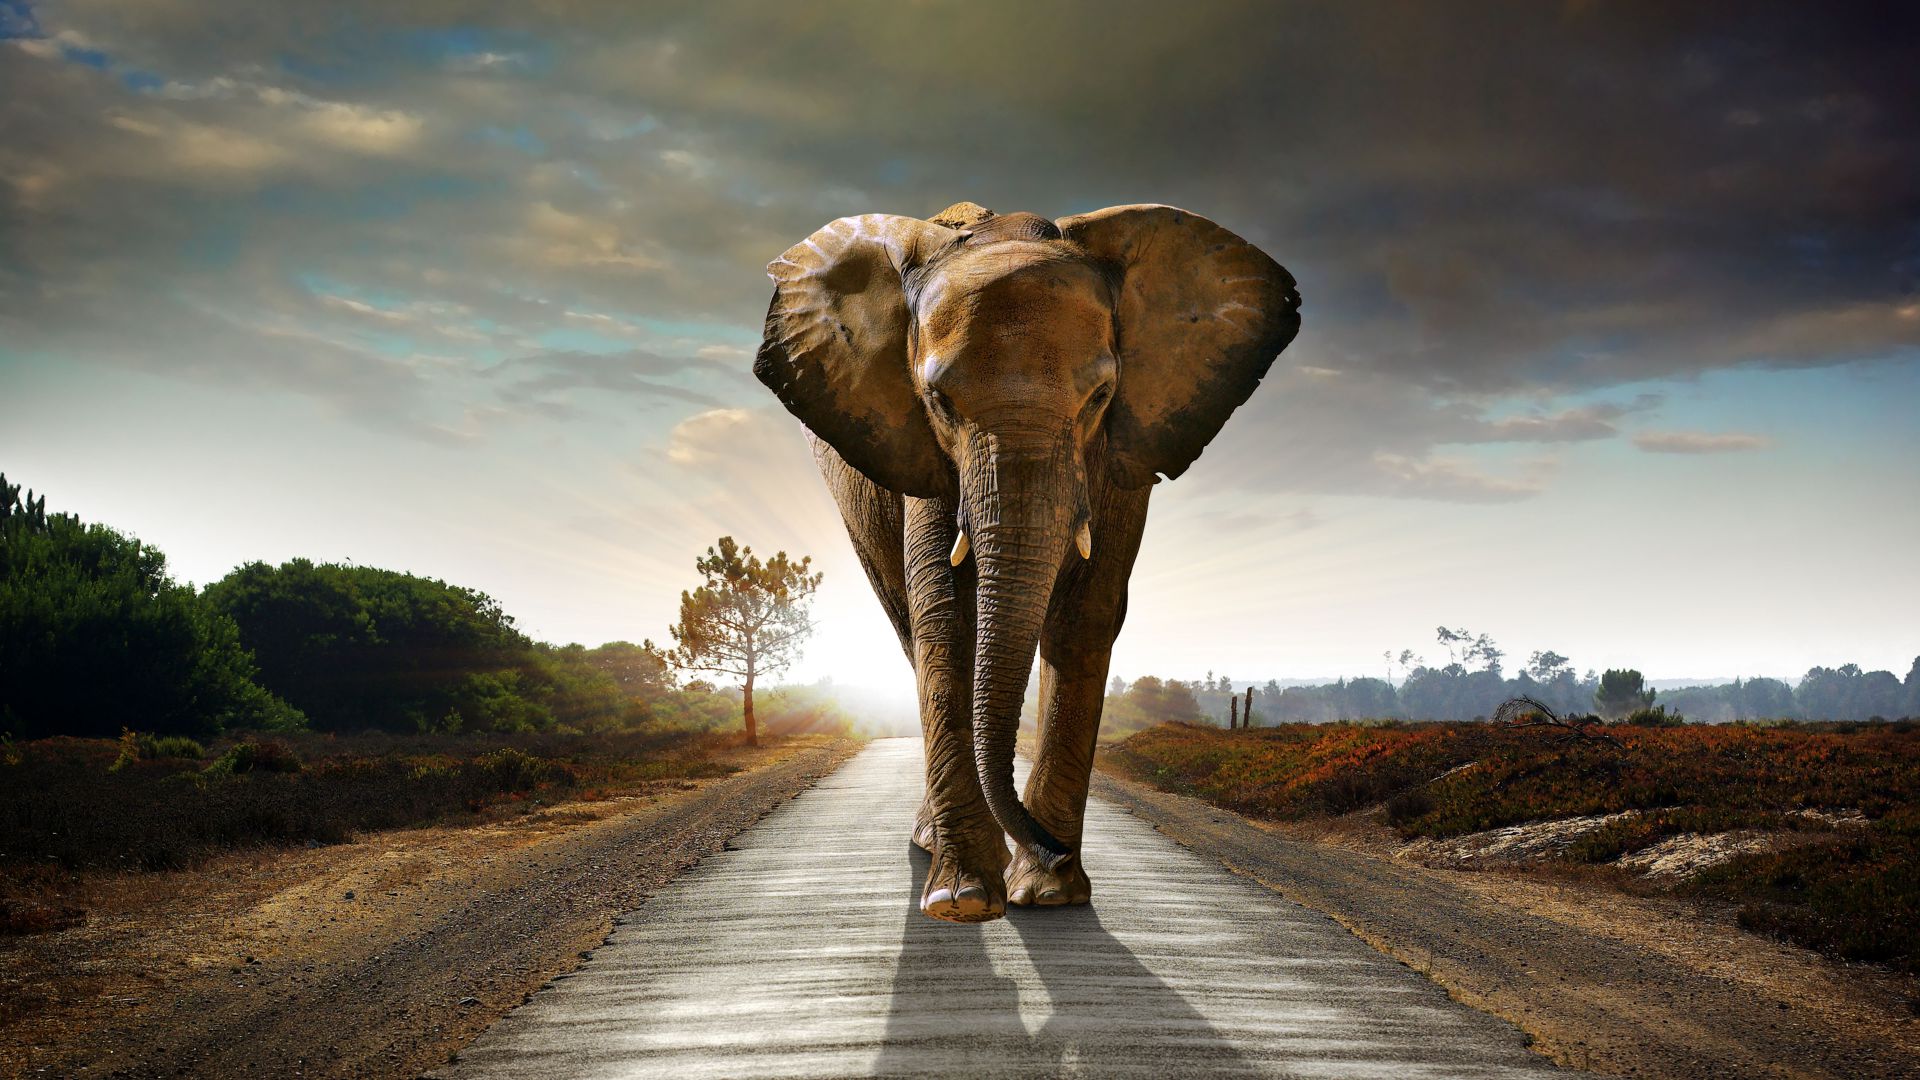 Elephant, sunset, road, nature (horizontal)